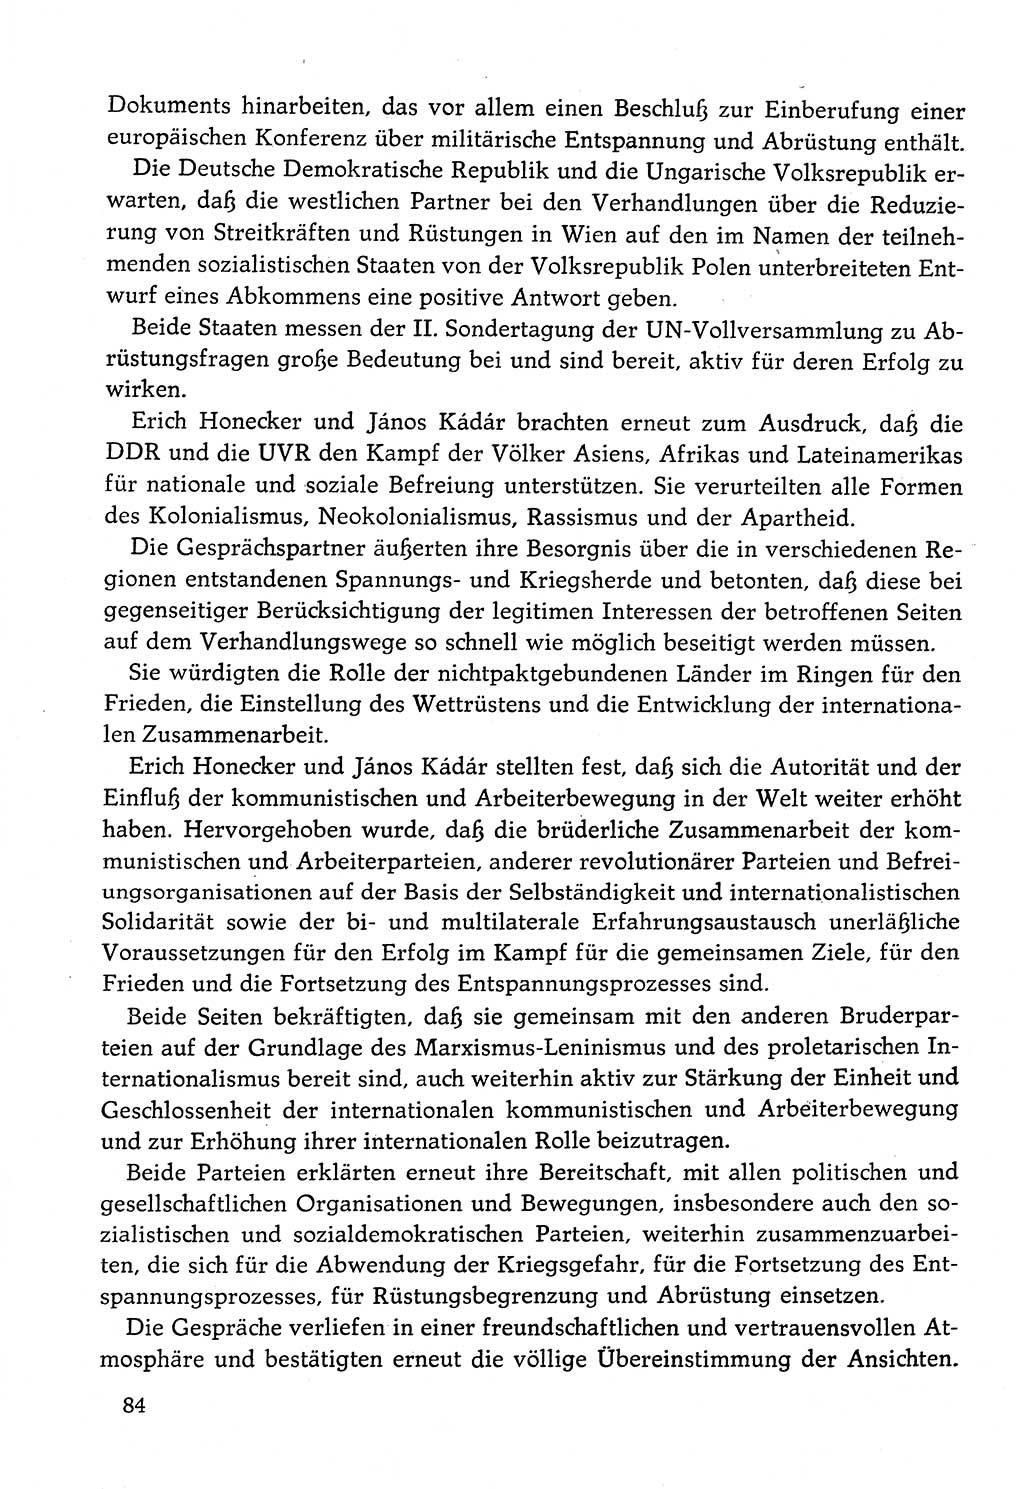 Dokumente der Sozialistischen Einheitspartei Deutschlands (SED) [Deutsche Demokratische Republik (DDR)] 1982-1983, Seite 84 (Dok. SED DDR 1982-1983, S. 84)